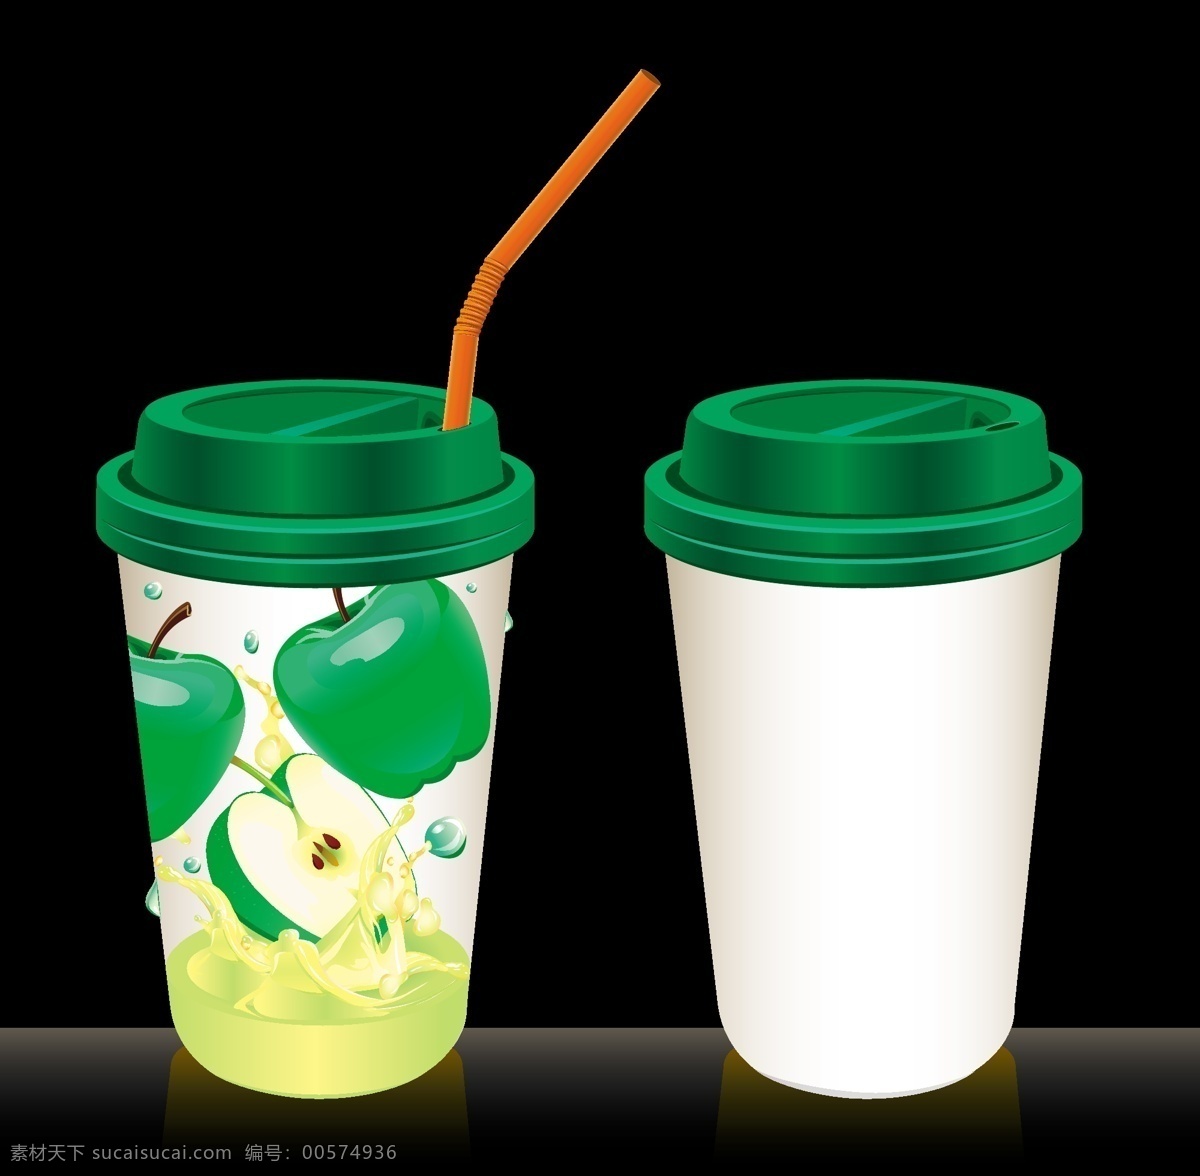 包装设计 果汁包装 青苹果 青苹果图片 塑料杯 矢量 模板下载 果汁包裝 包裝 果汁天然水果